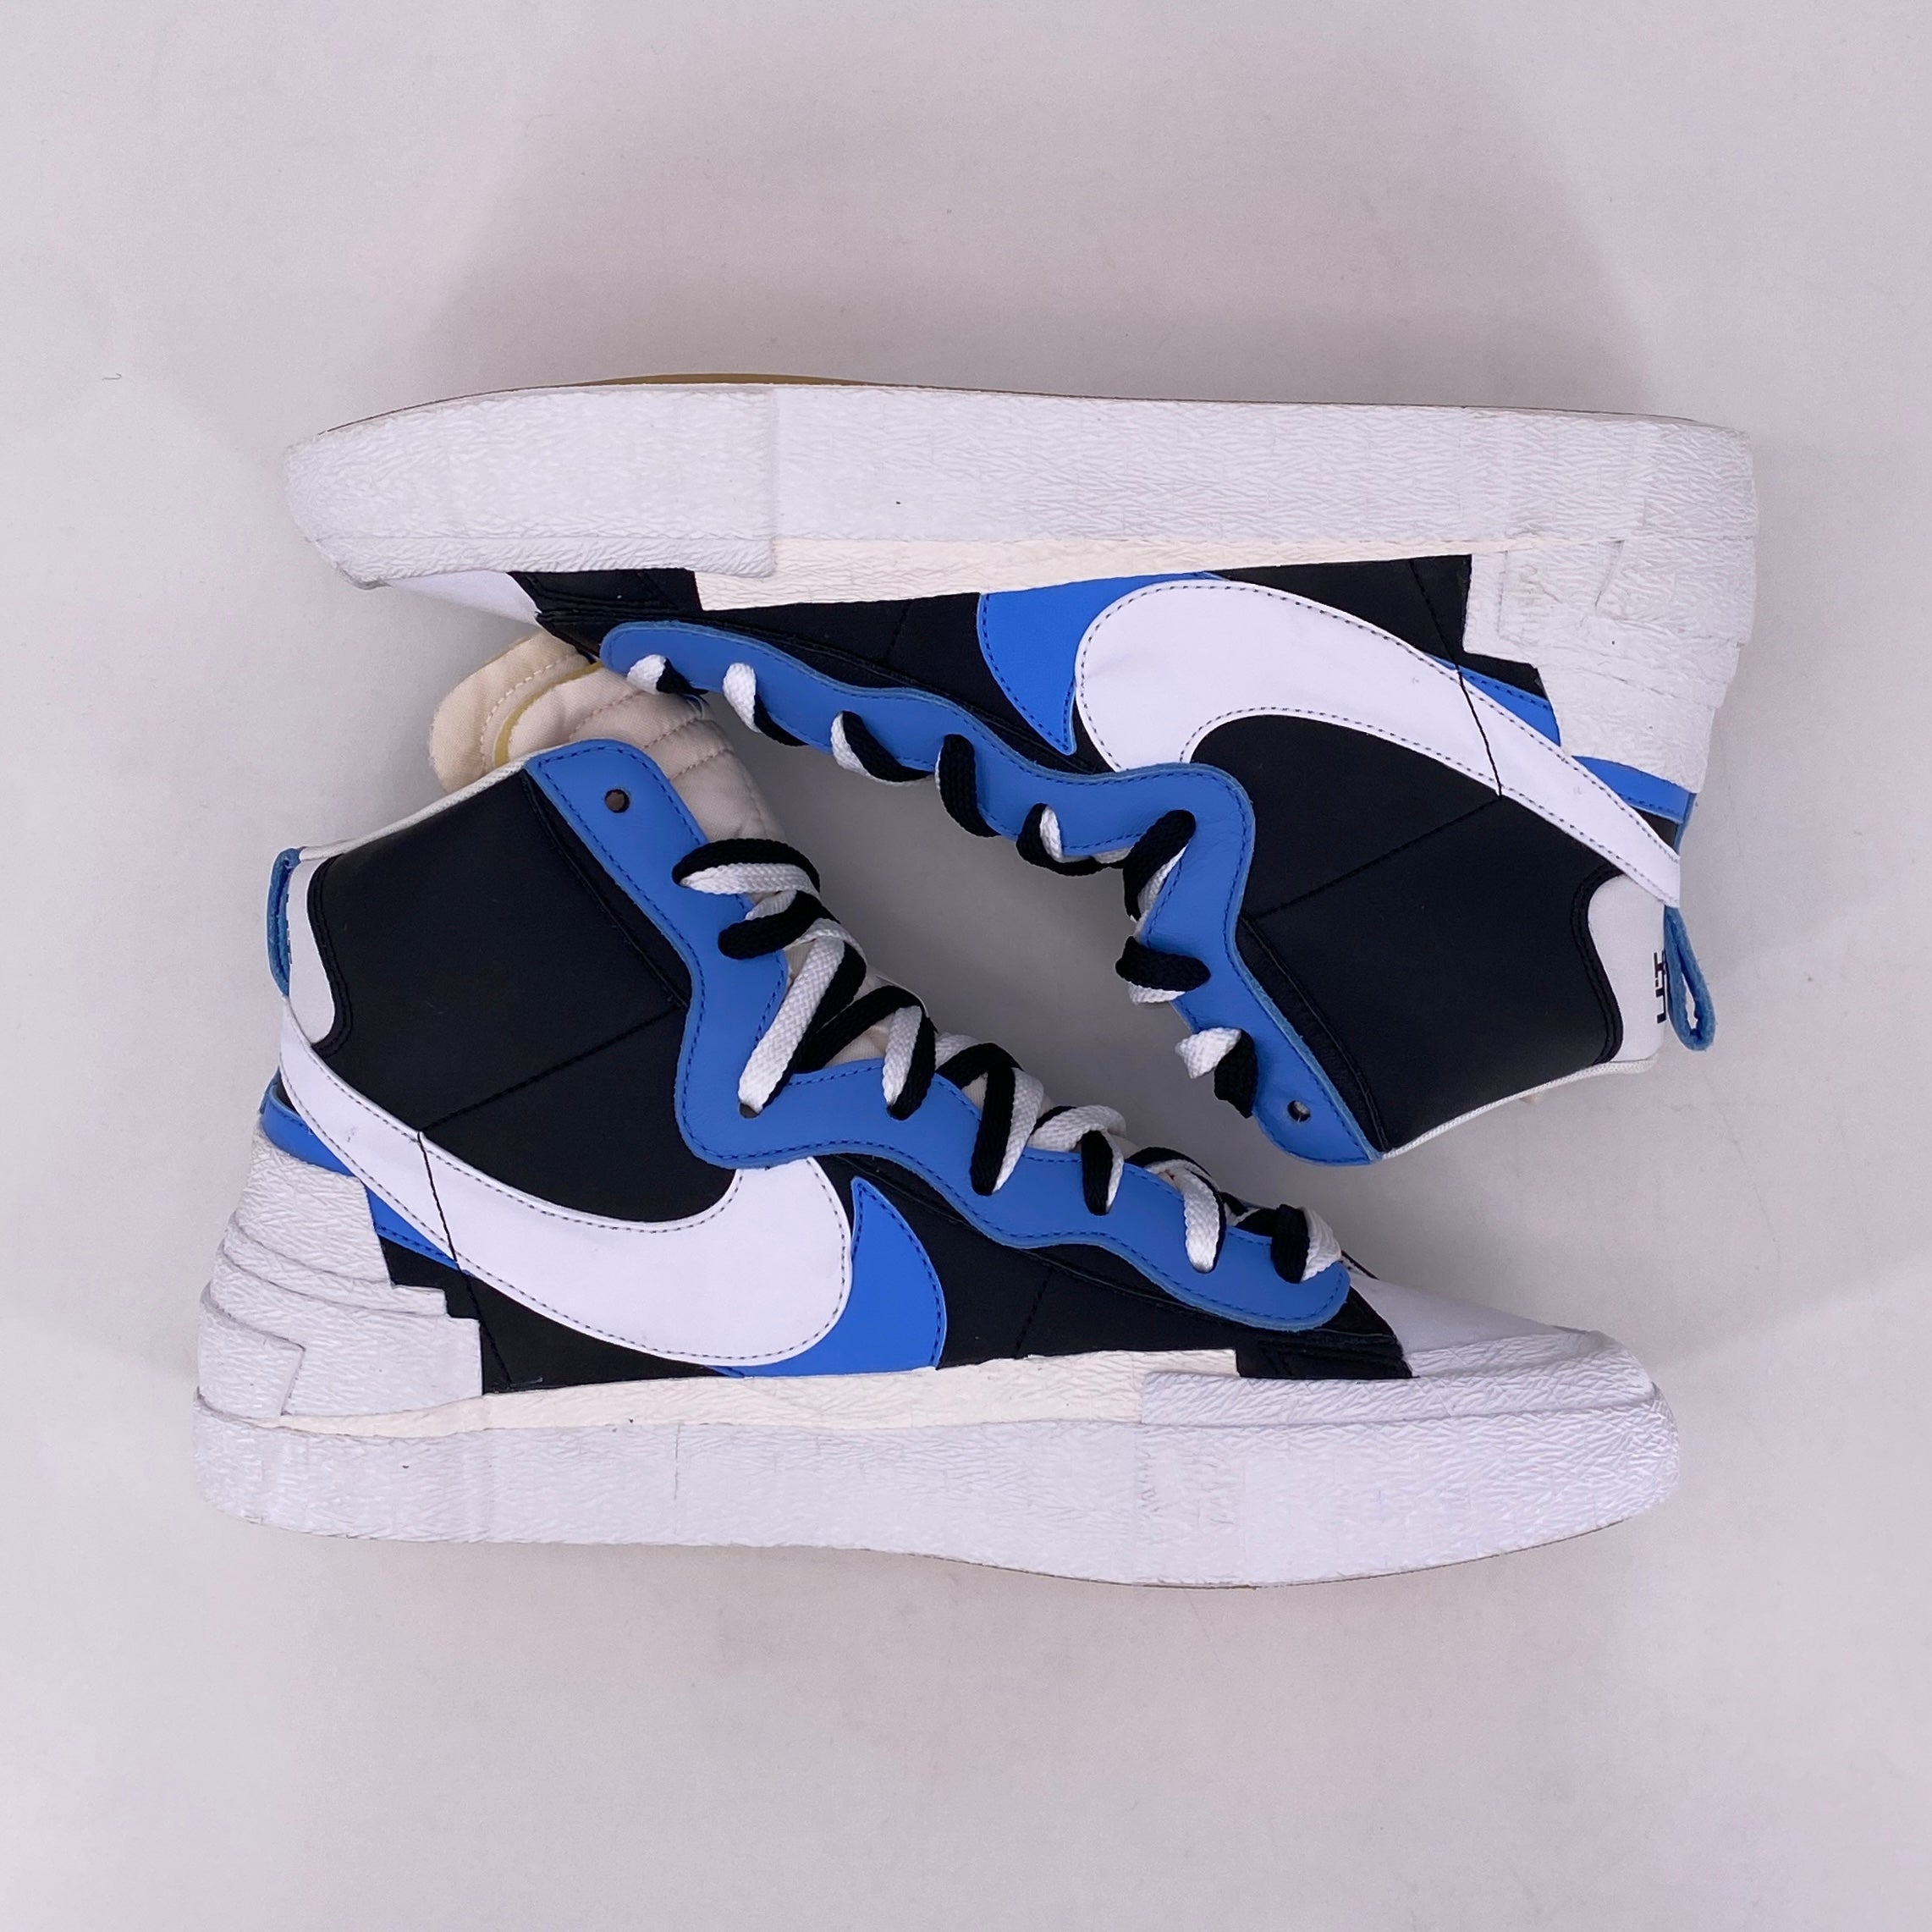 Nike Blazer Mid / Sacai &quot;Legend Blue&quot; 2019 New Size 13